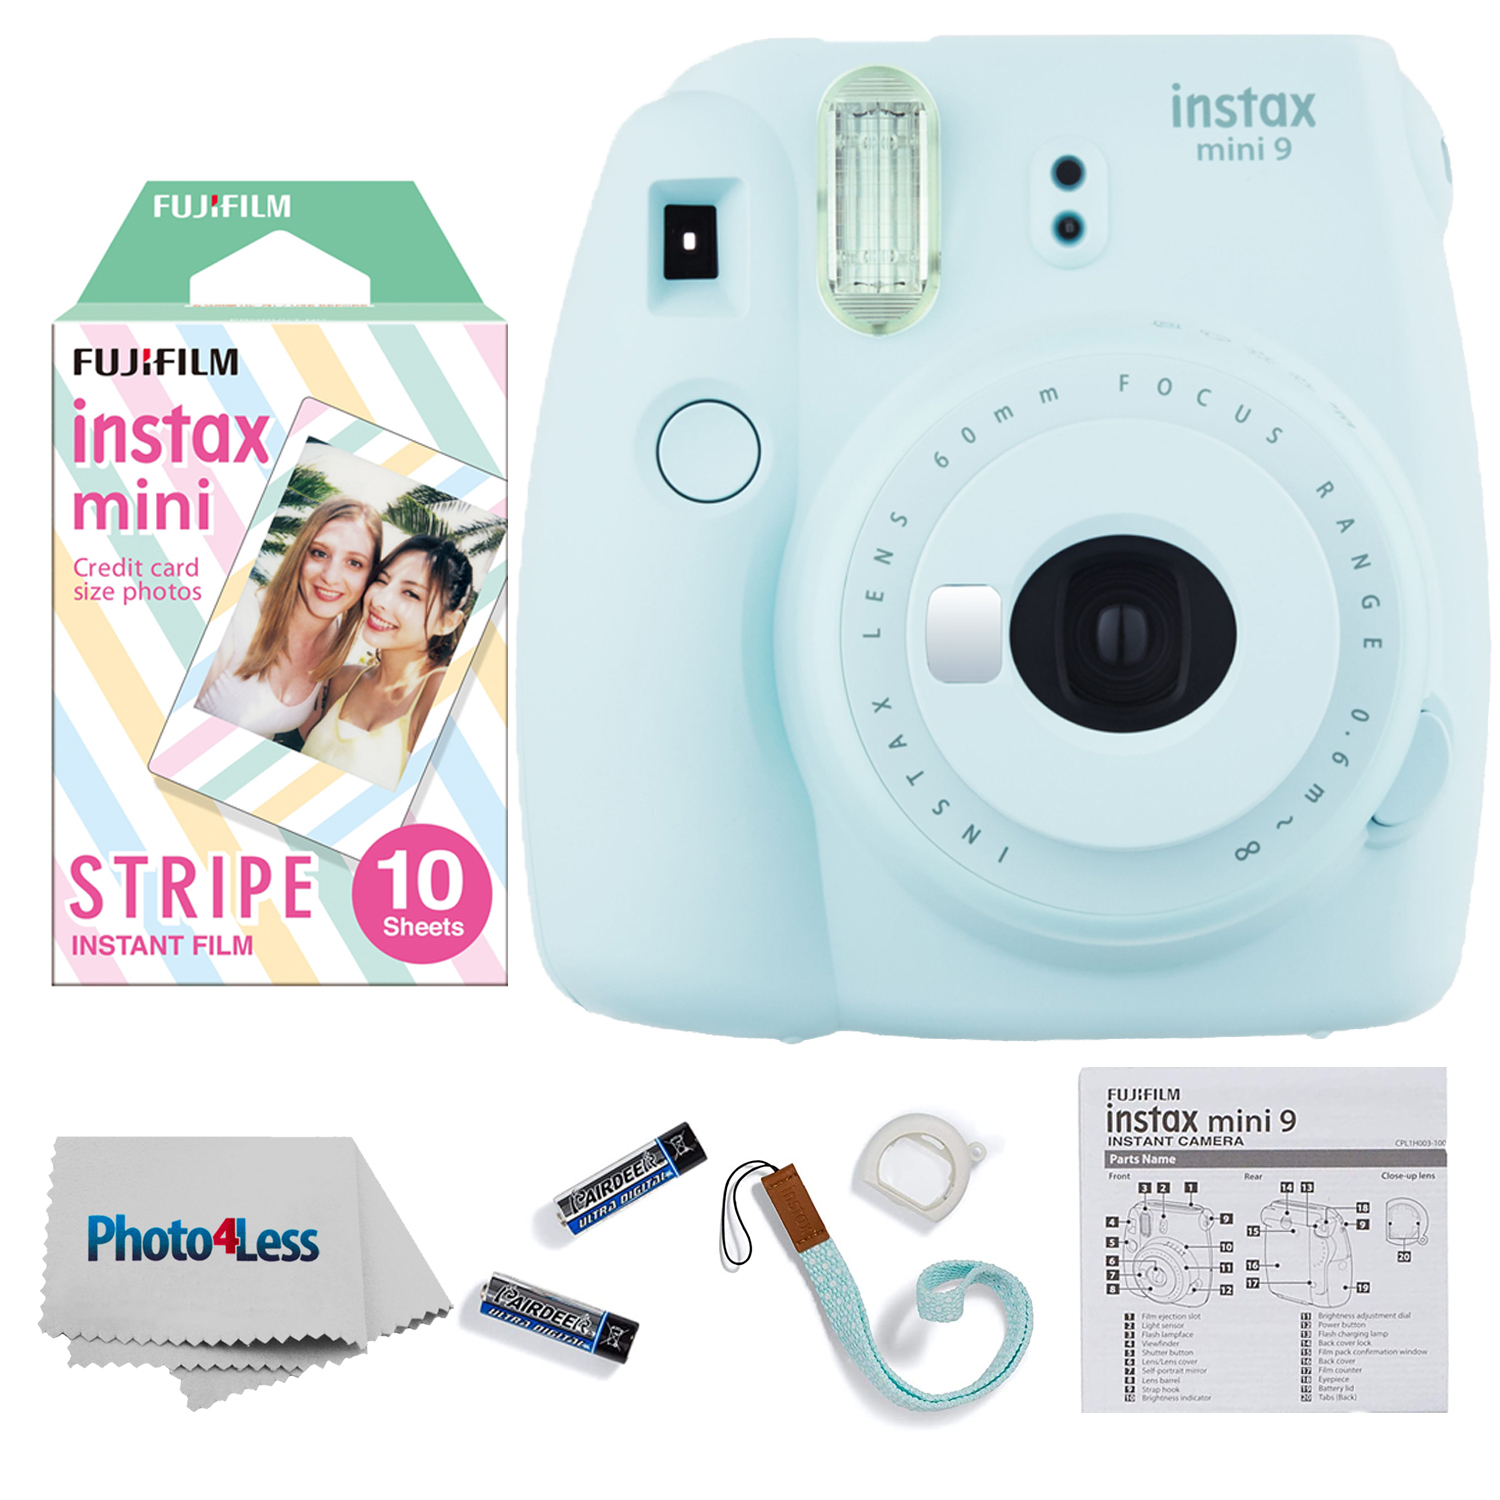 Fujifilm Instax Mini 12 Camera - Blue : Target